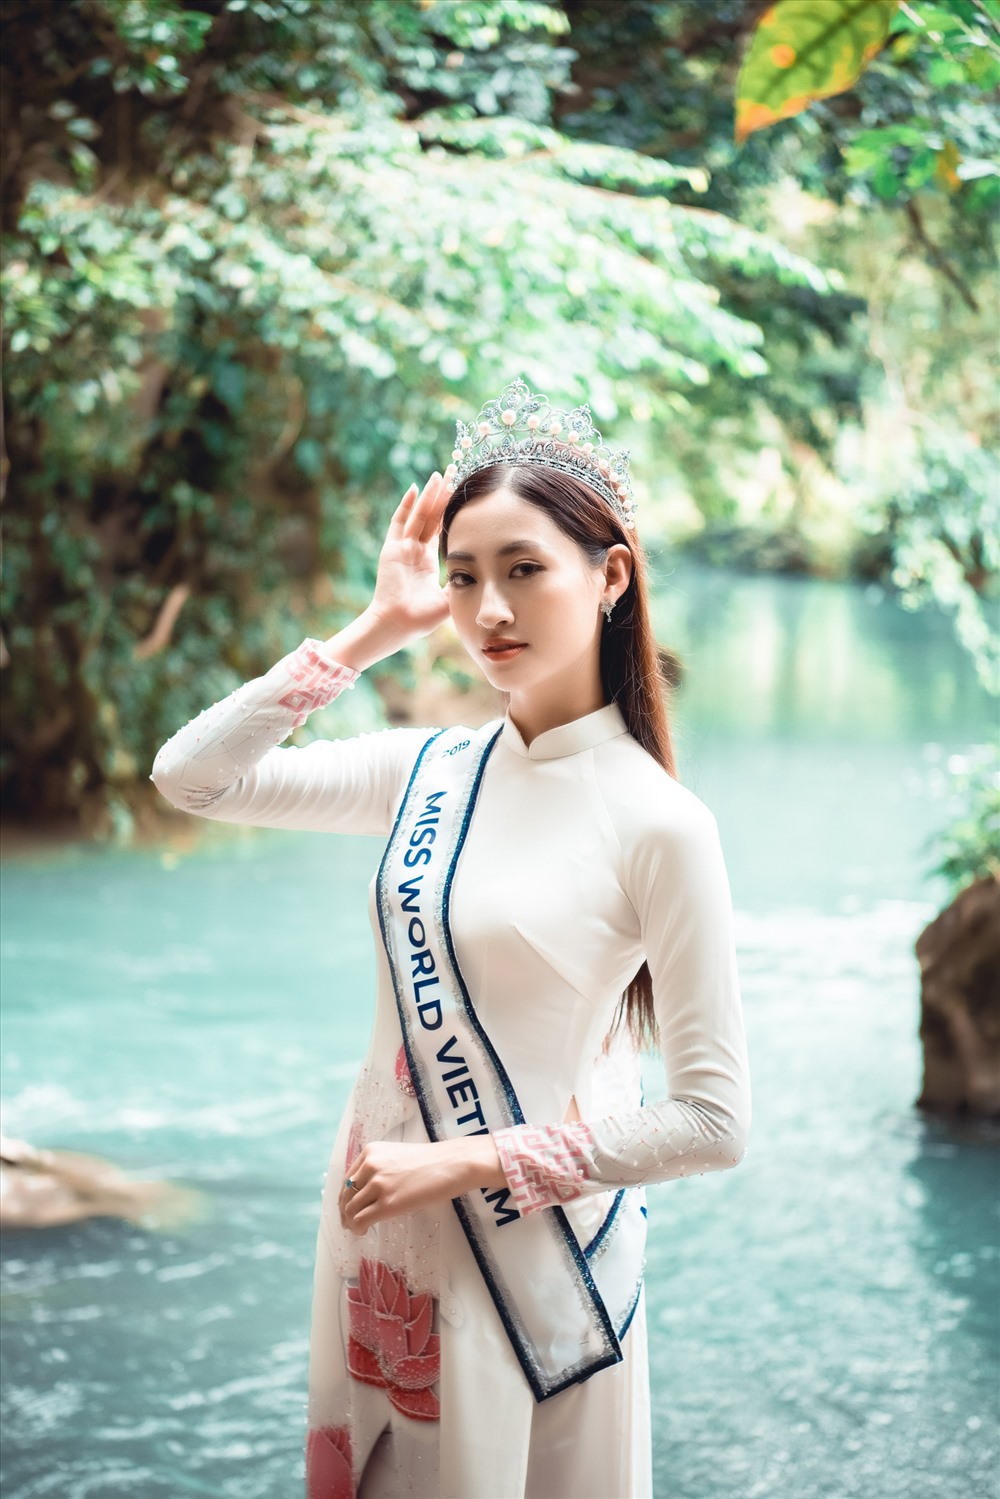 Về thăm quê sau đăng quang, Hoa hậu Lương Thùy Linh đã có những hoạt động đầy ý nghĩa tại quê nhà Cao Bằng.  Ảnh: Vũ Toàn.